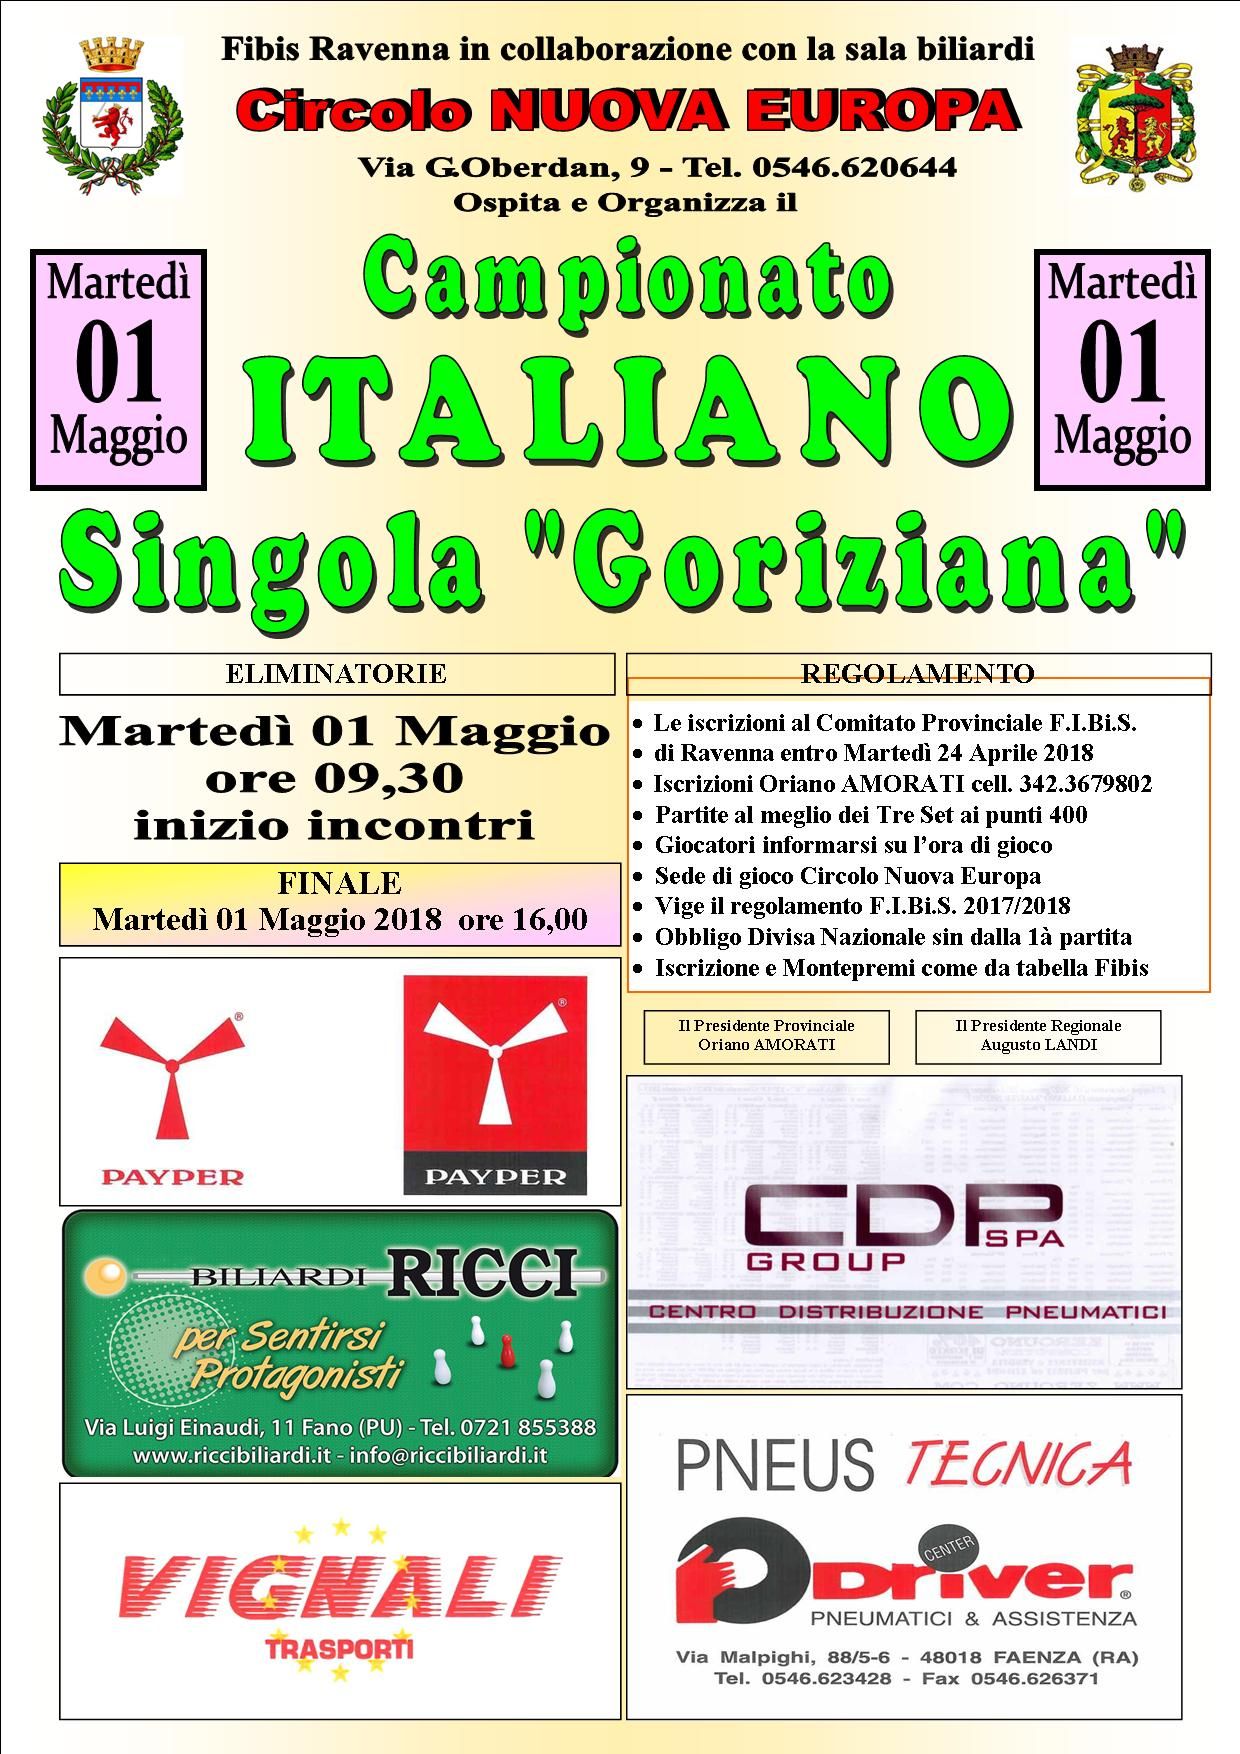 Campionato Italiano Goriziana